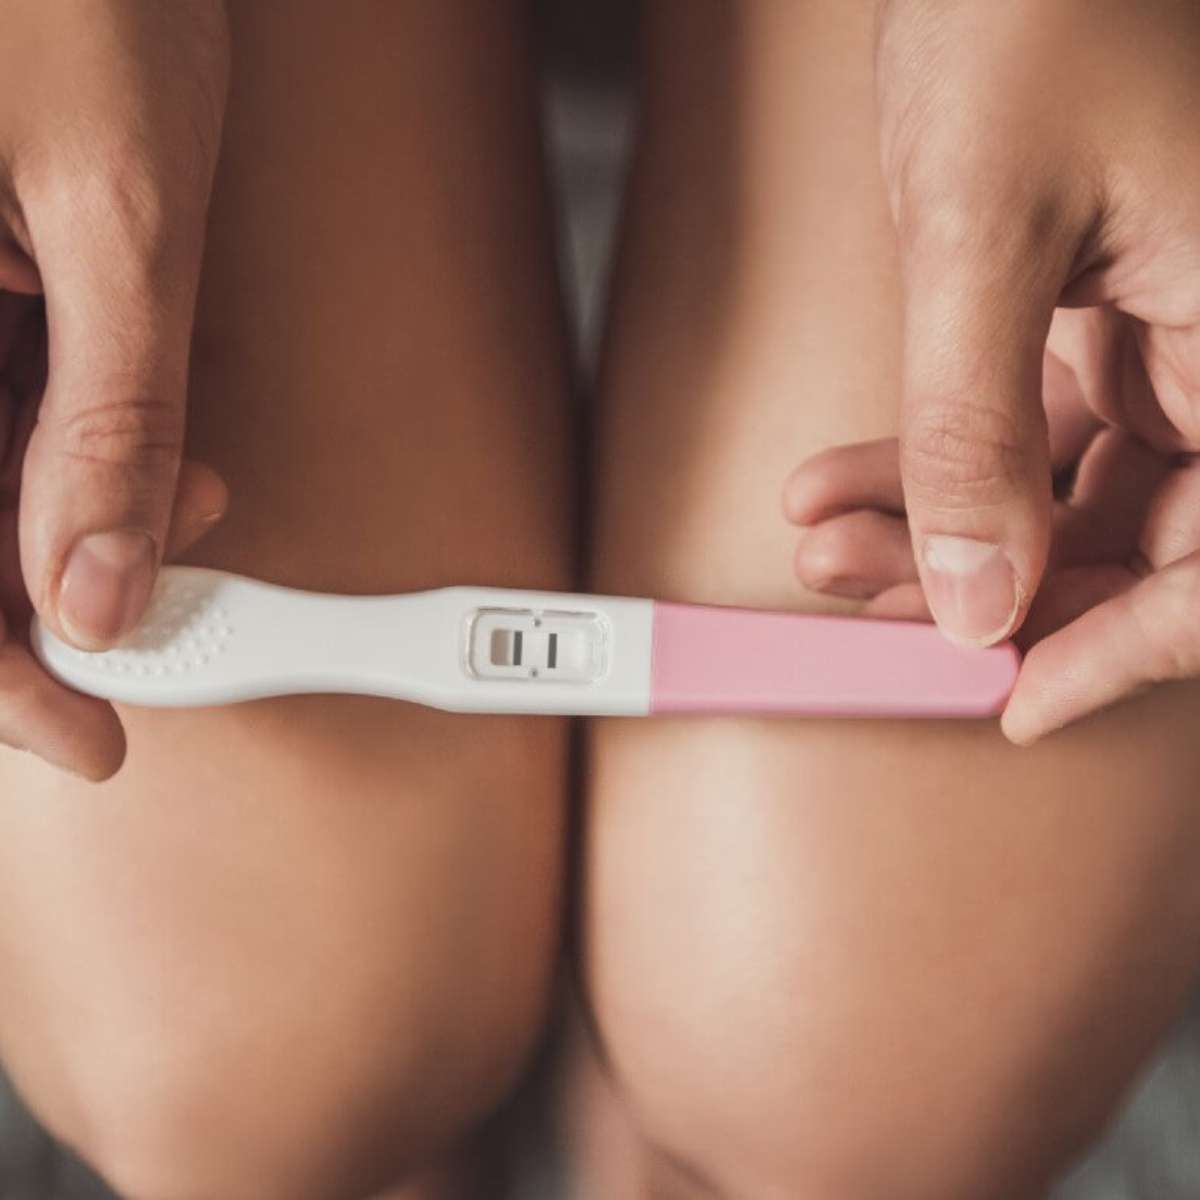 Menstruação atrasada nem sempre é gravidez. Confira outras razões